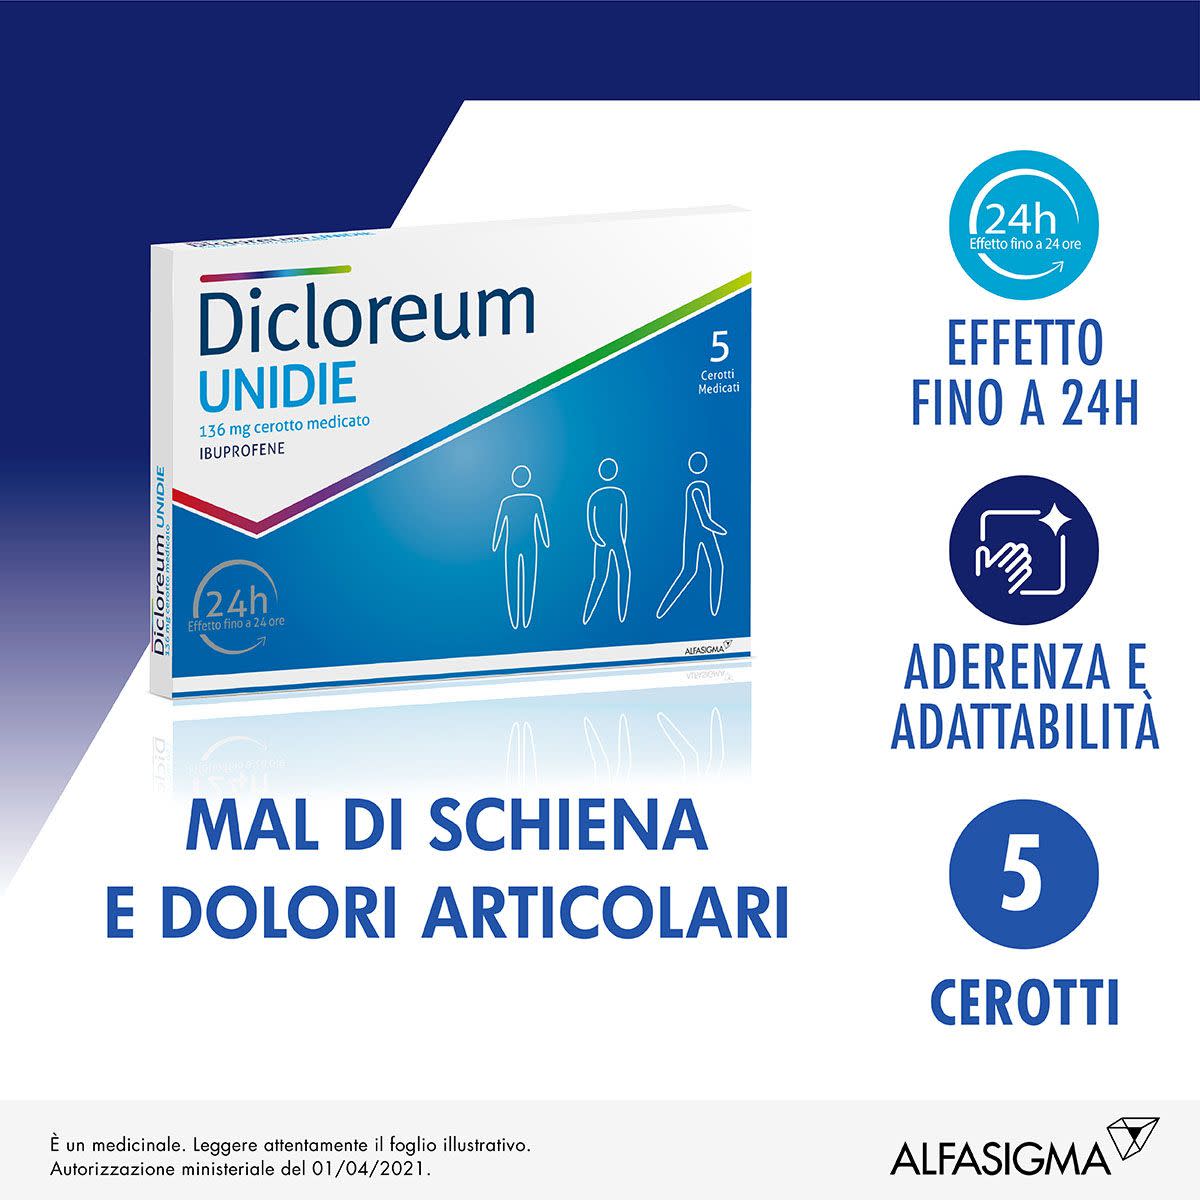 037184013 - Dicloreum Unidie 5 Cerotti Medicati - 7892388_4.jpg